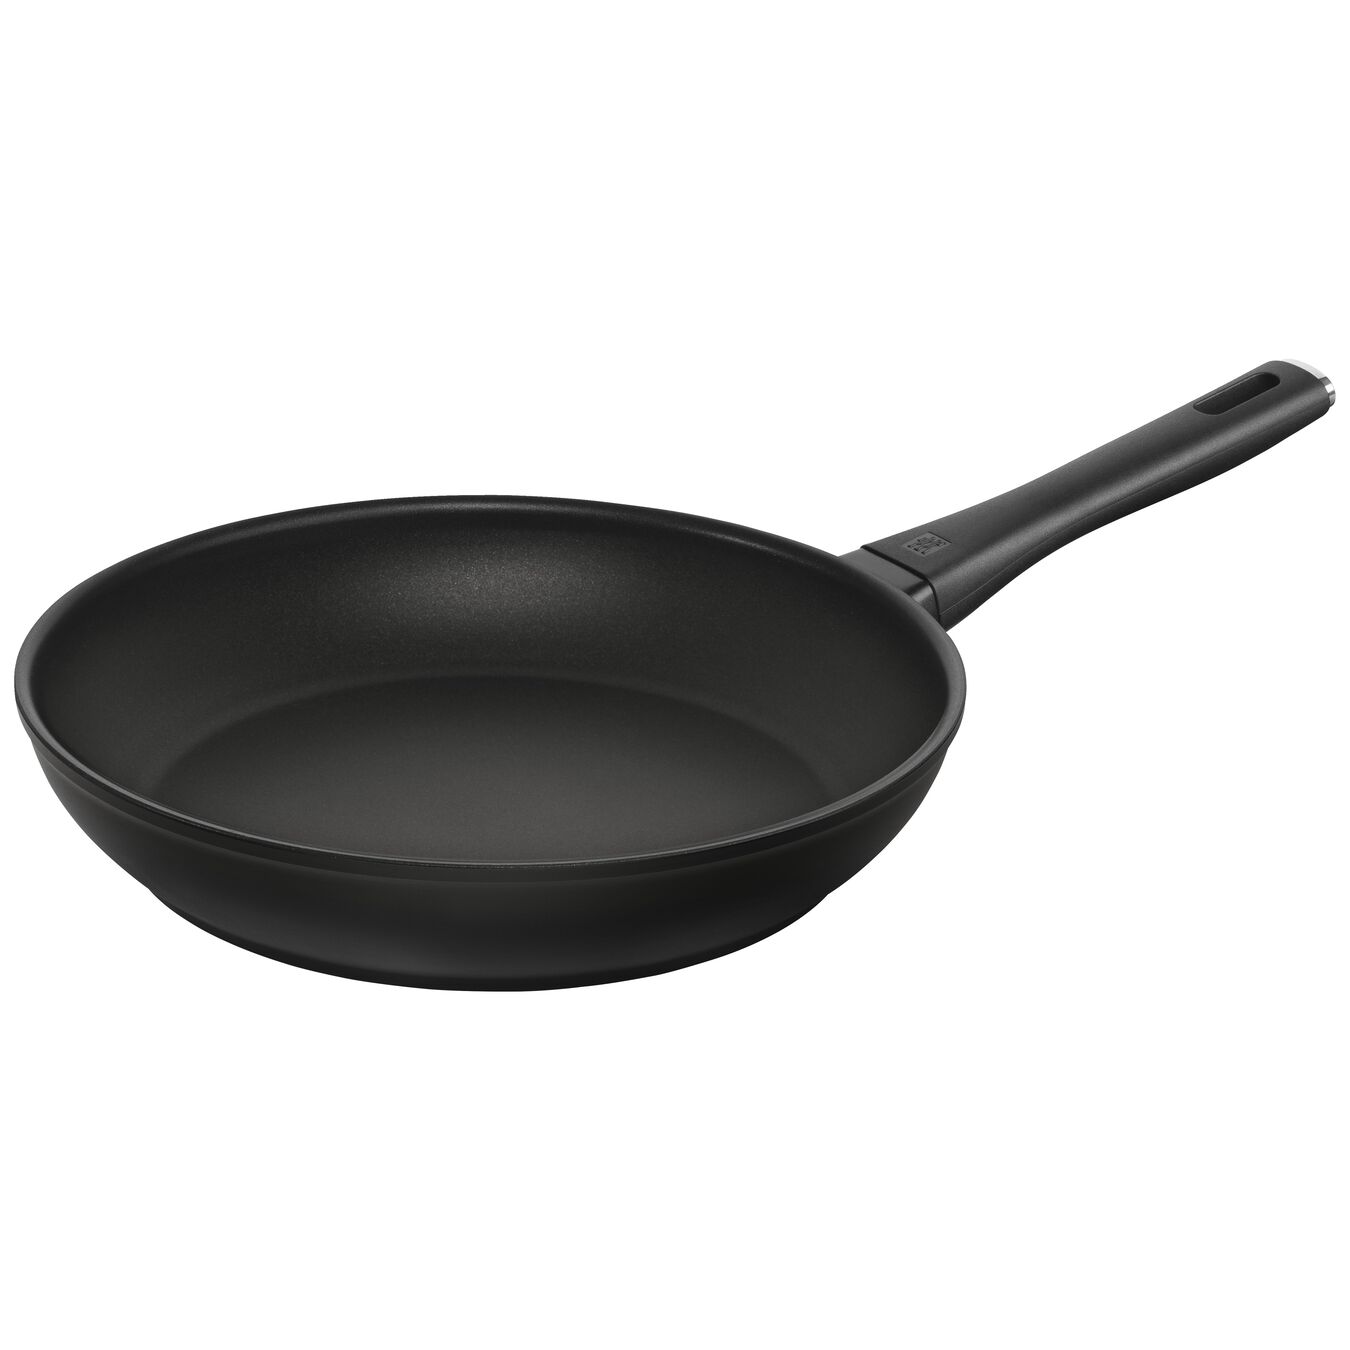 28 cm Aluminium Frying pan black,,large 2